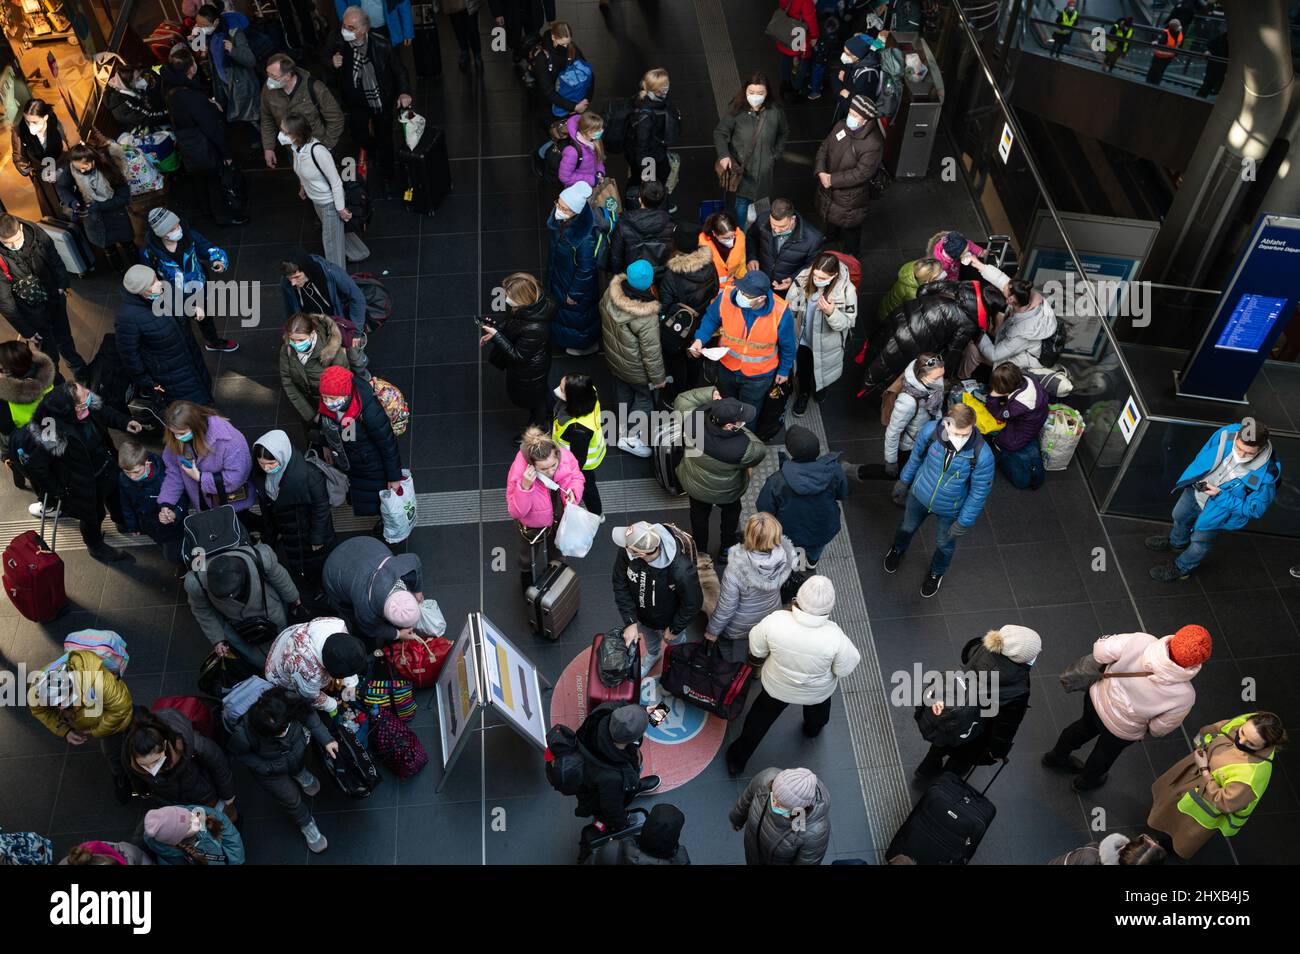 10.03.2022, Berlin, Allemagne, Europe - les réfugiés de guerre de l'Ukraine arrivent à la gare centrale de Berlin après avoir échappé à la guerre dans leur pays d'origine. Banque D'Images